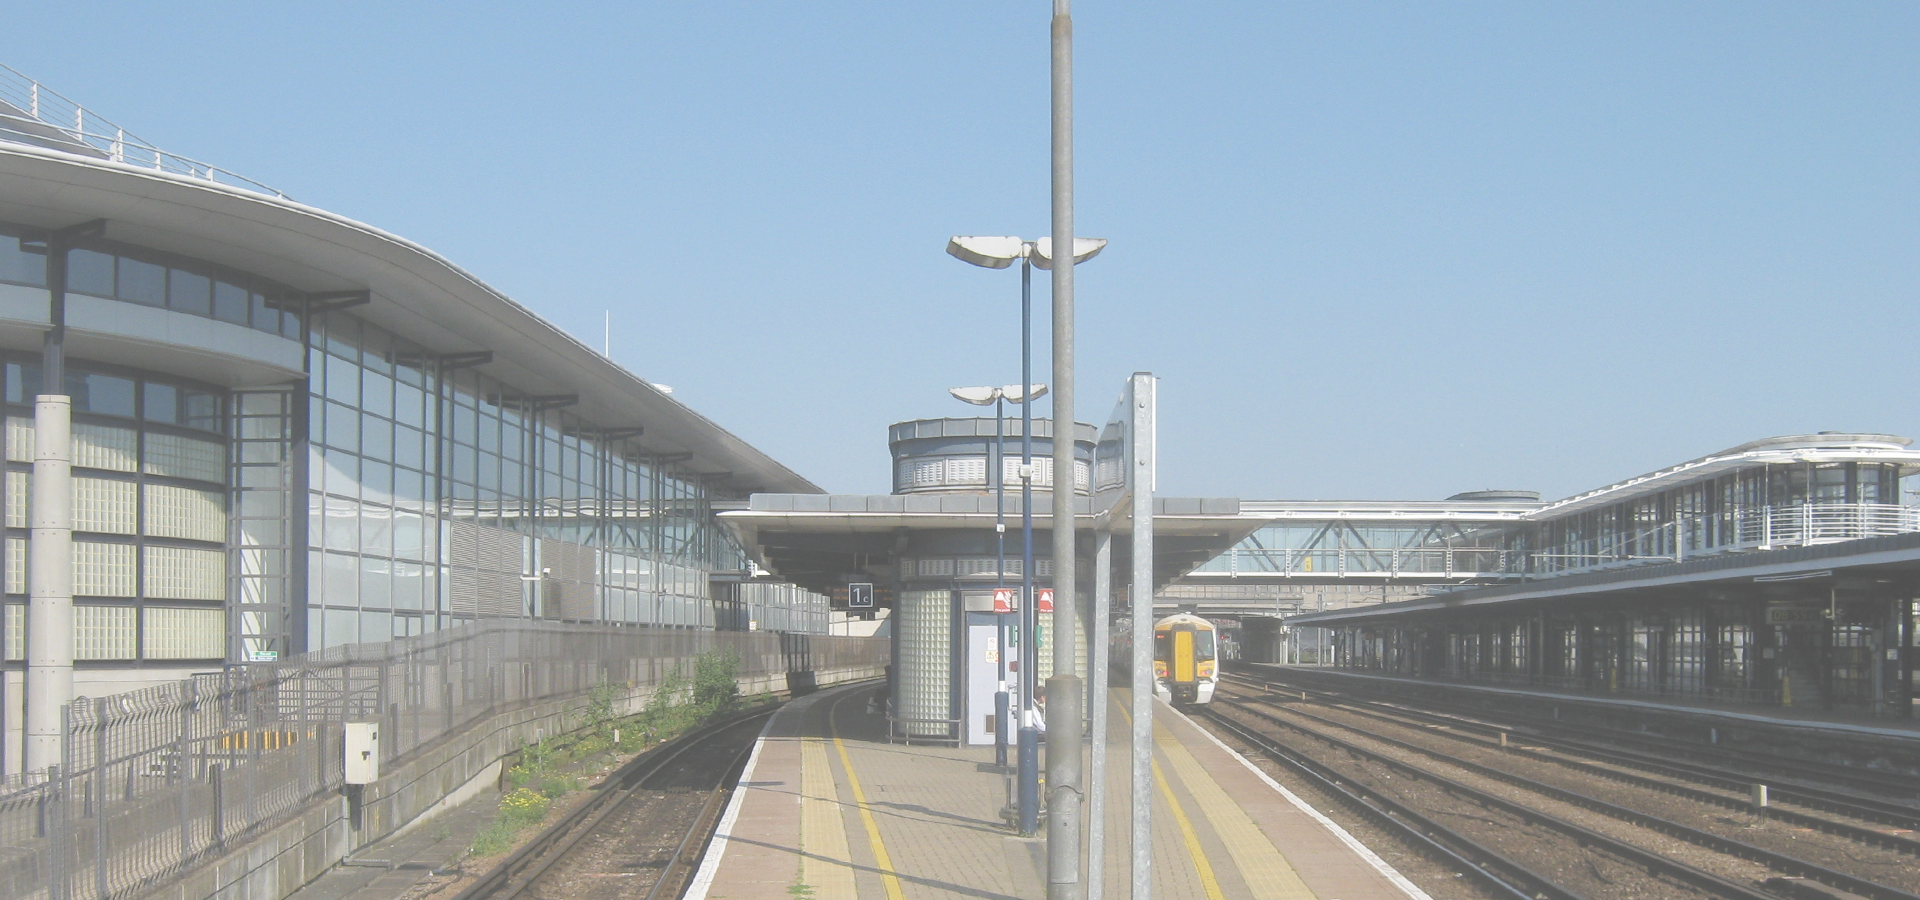 Ashford Station, Kent